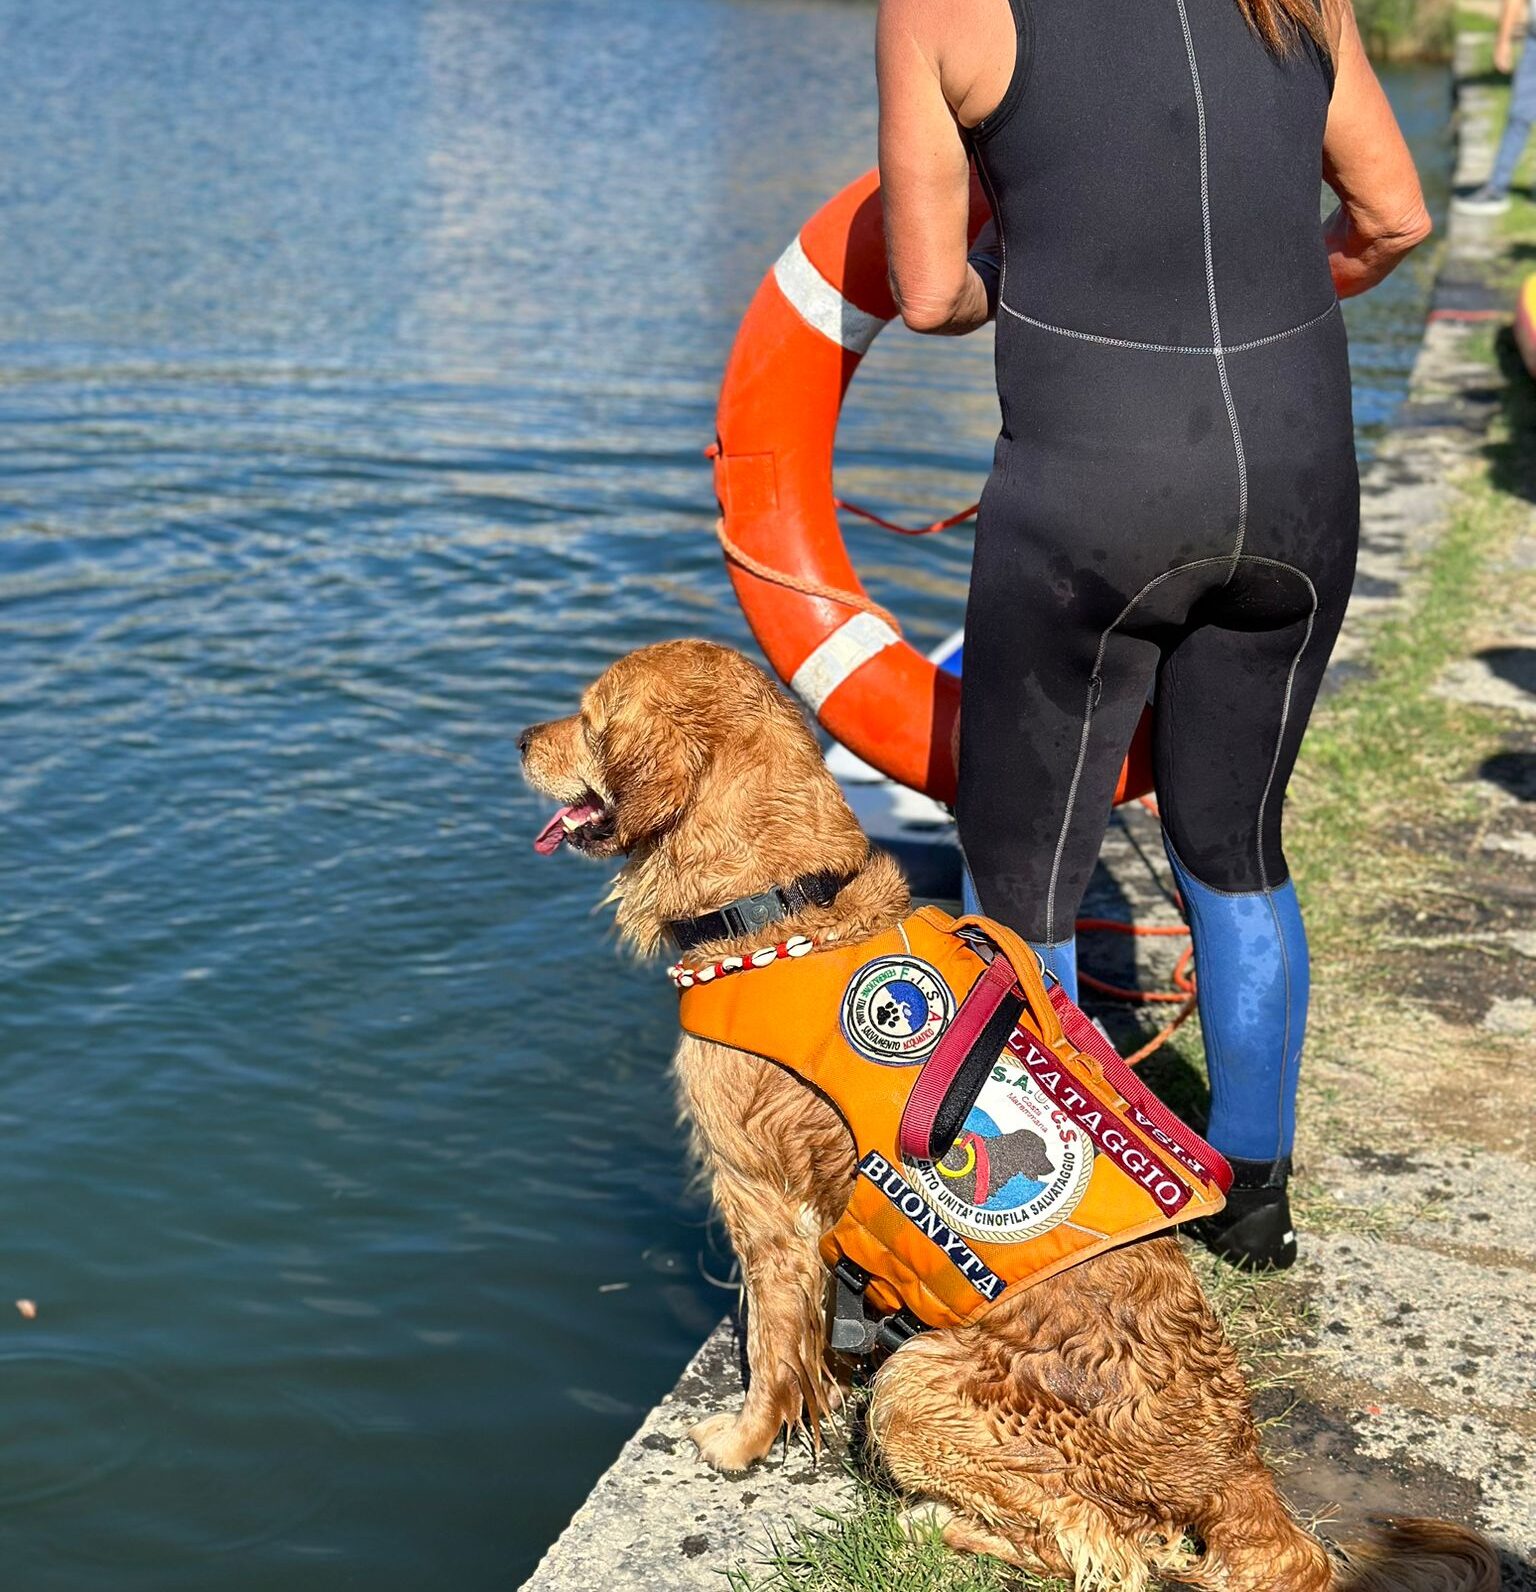 Cani da salvataggio in azione al Lago d’Averno per la campagna “Io non rischio” – LE FOTO